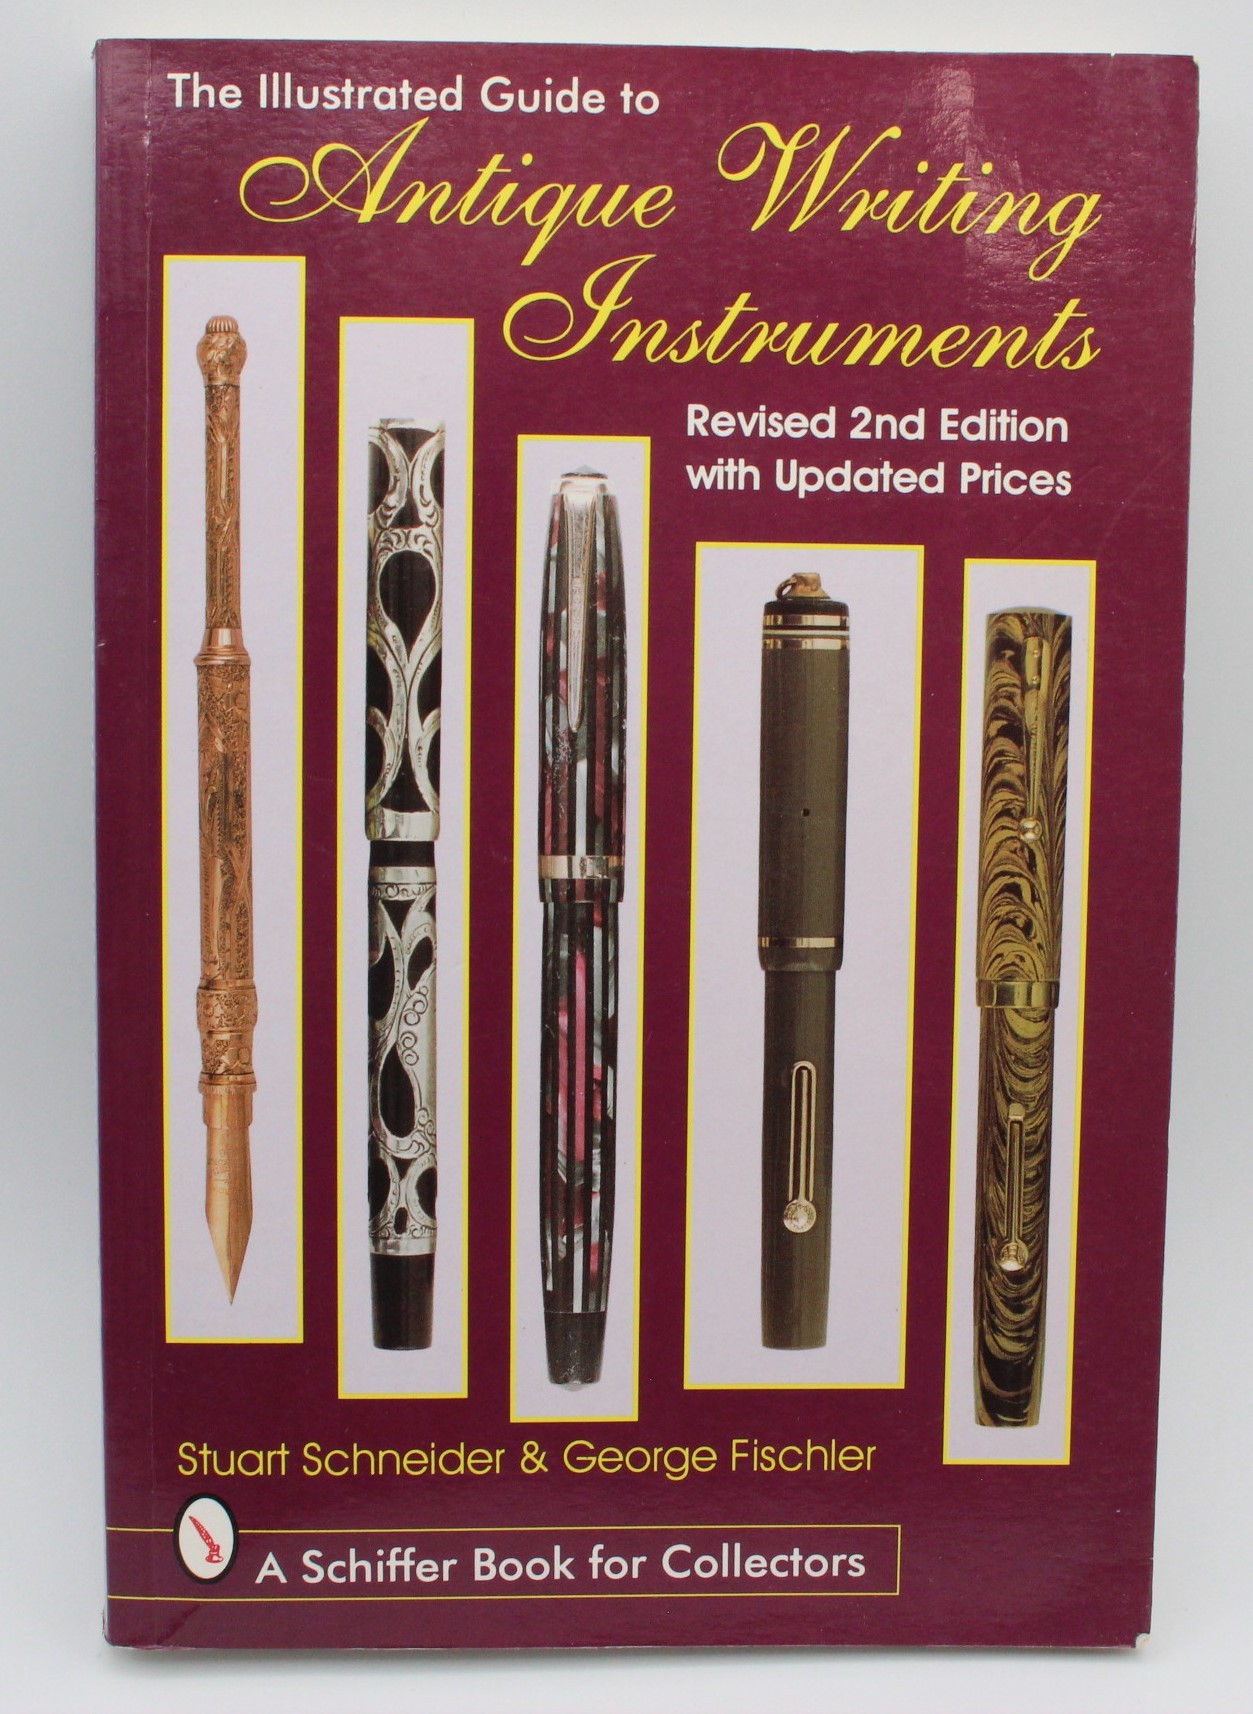  Antique Writing Instruments Revised 2nd Edition - Stuart Schneider & George Fischler